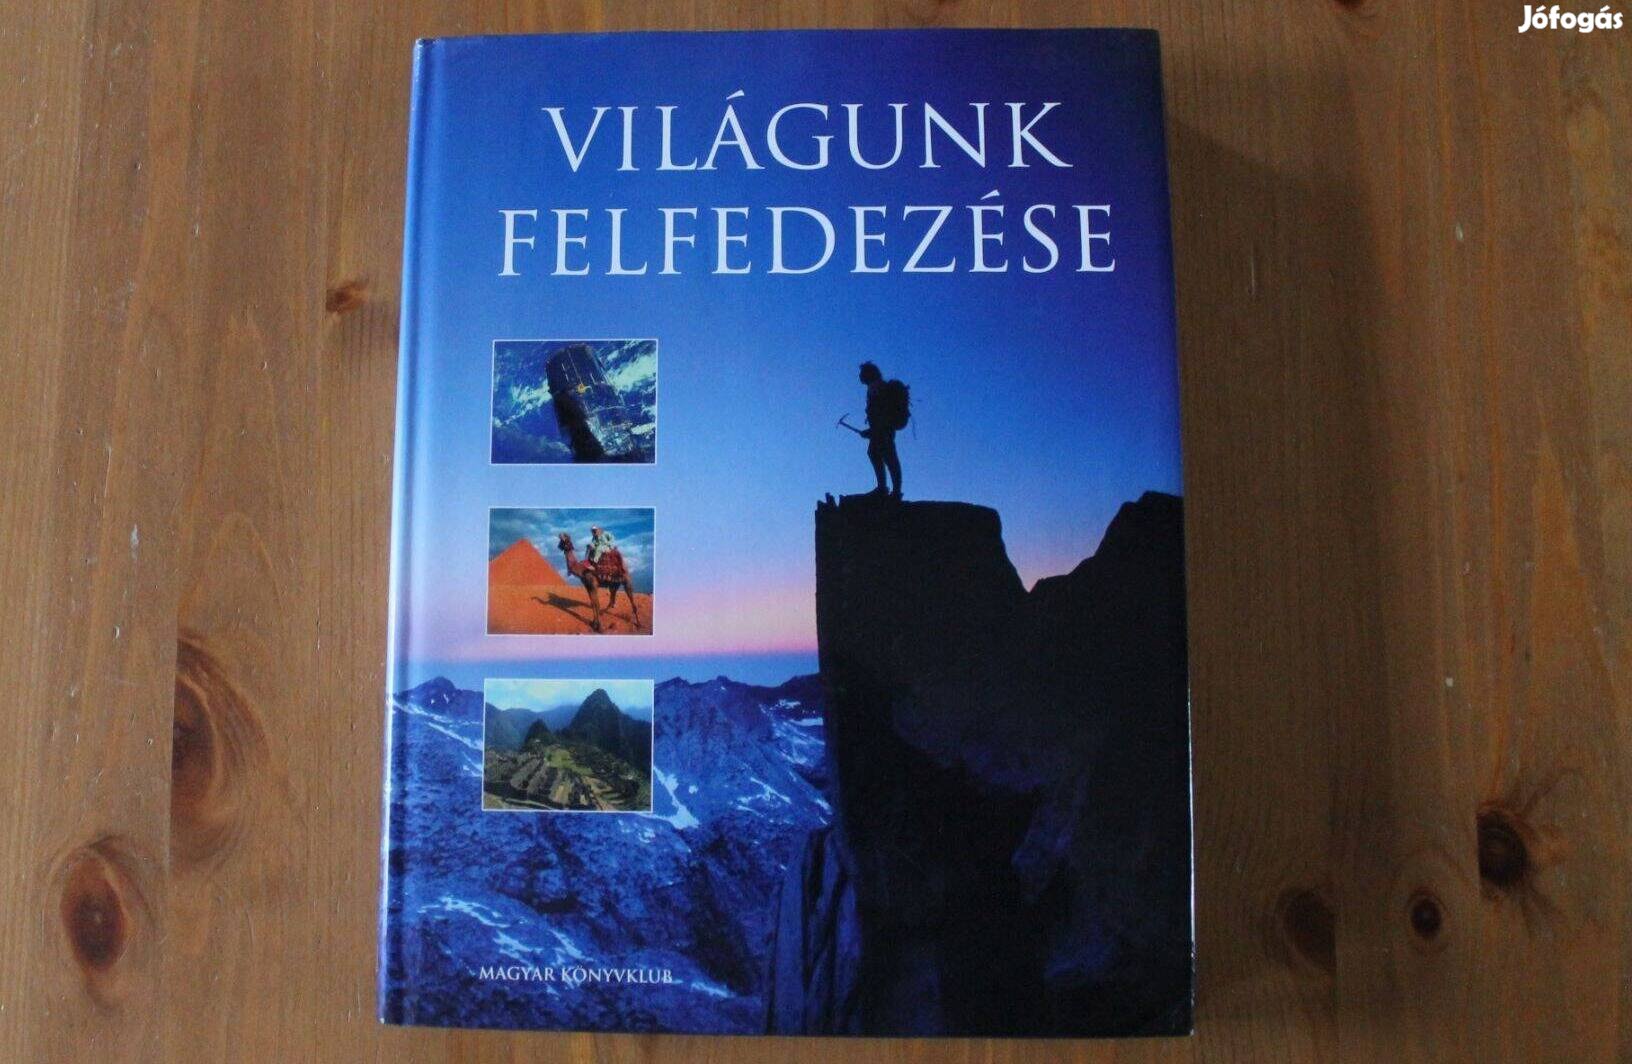 Világunk felfedezése (Magyar Könyvklub)